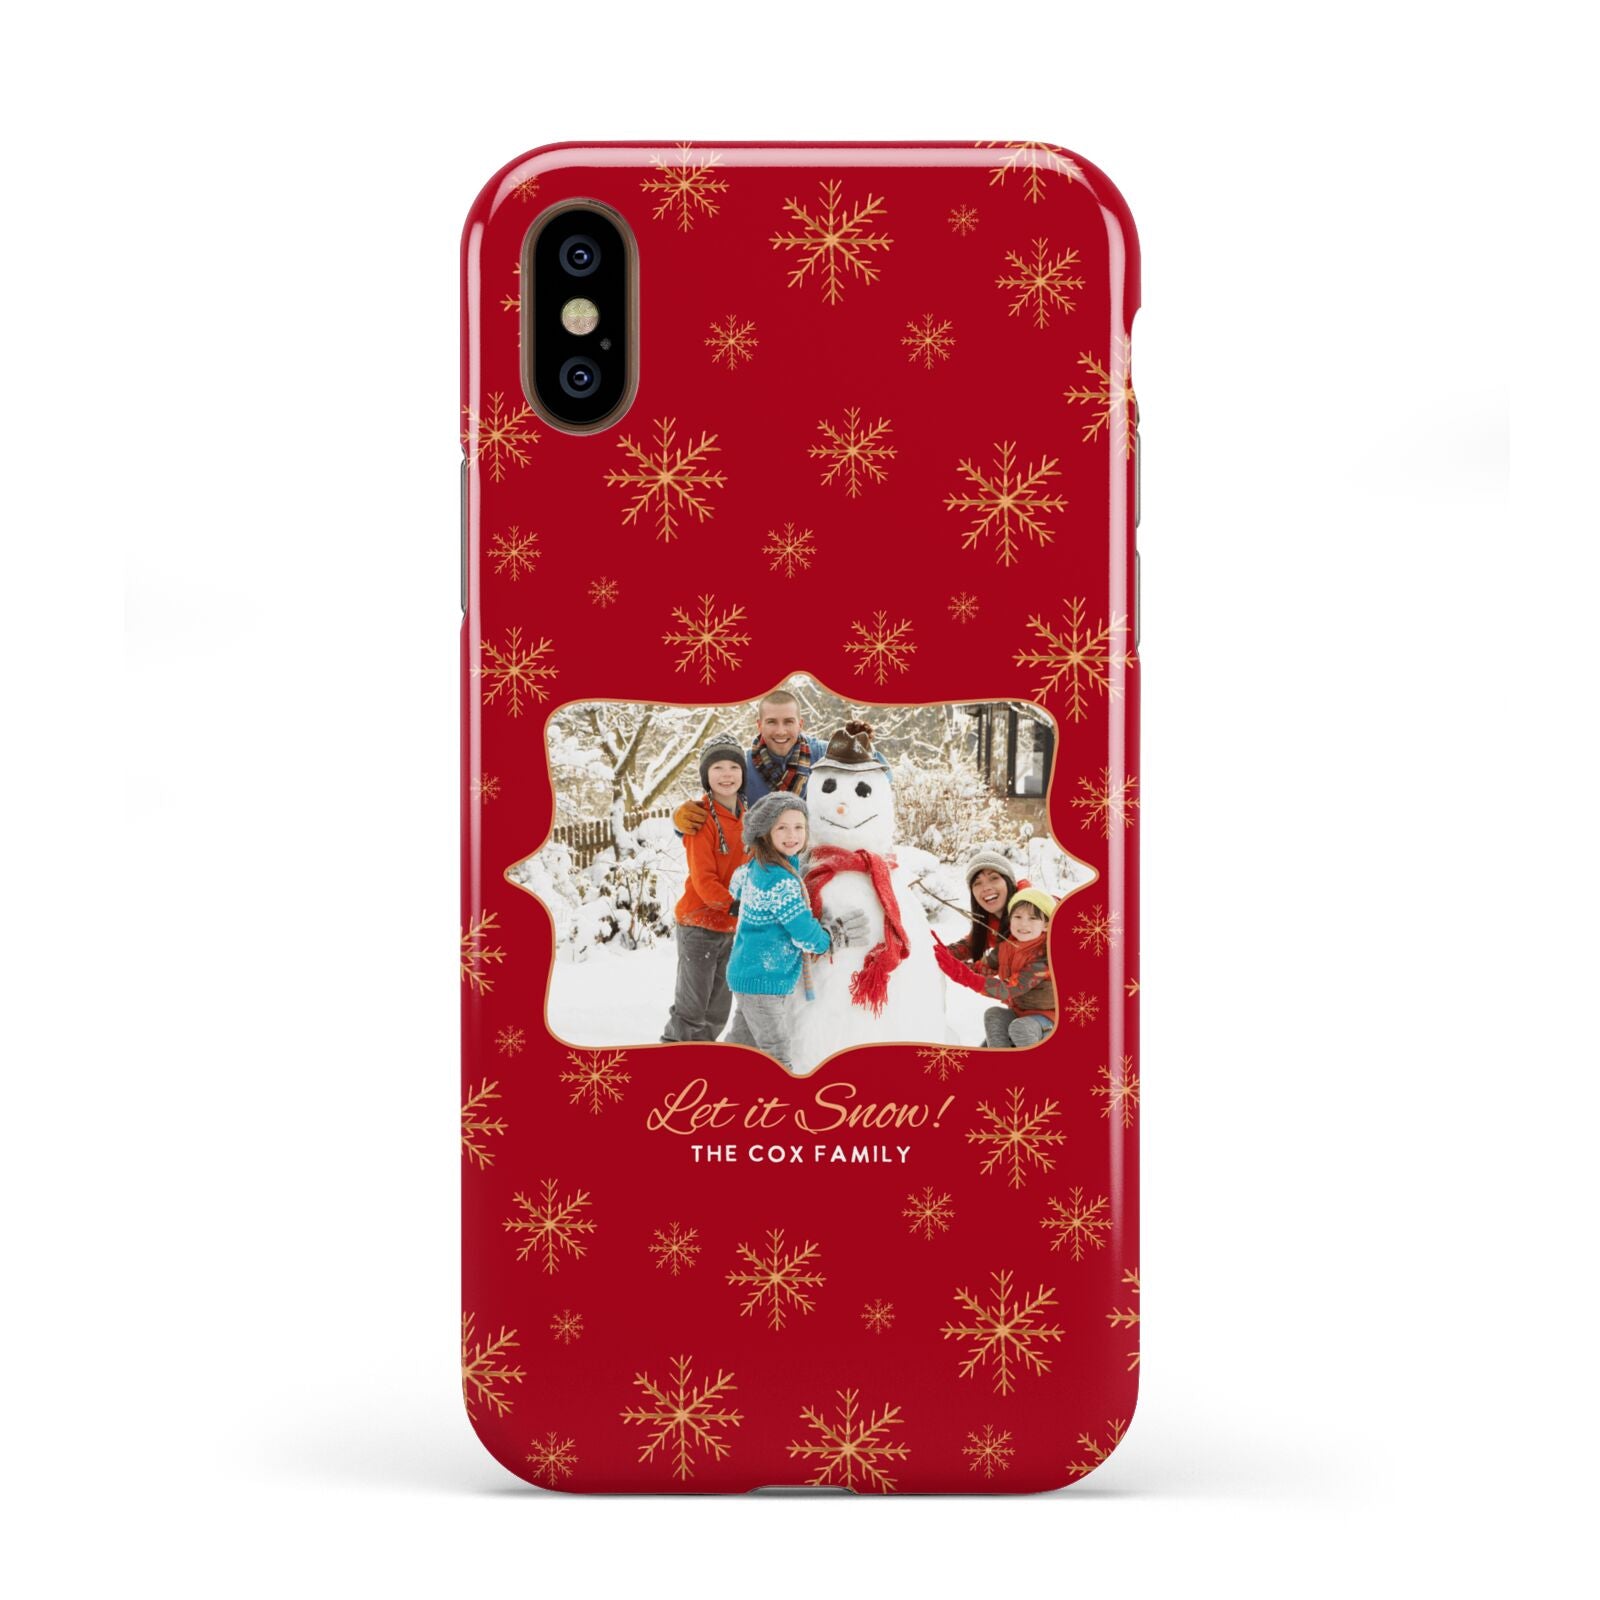 Let it Snow Christmas Photo Upload Apple iPhone XS 3D Tough